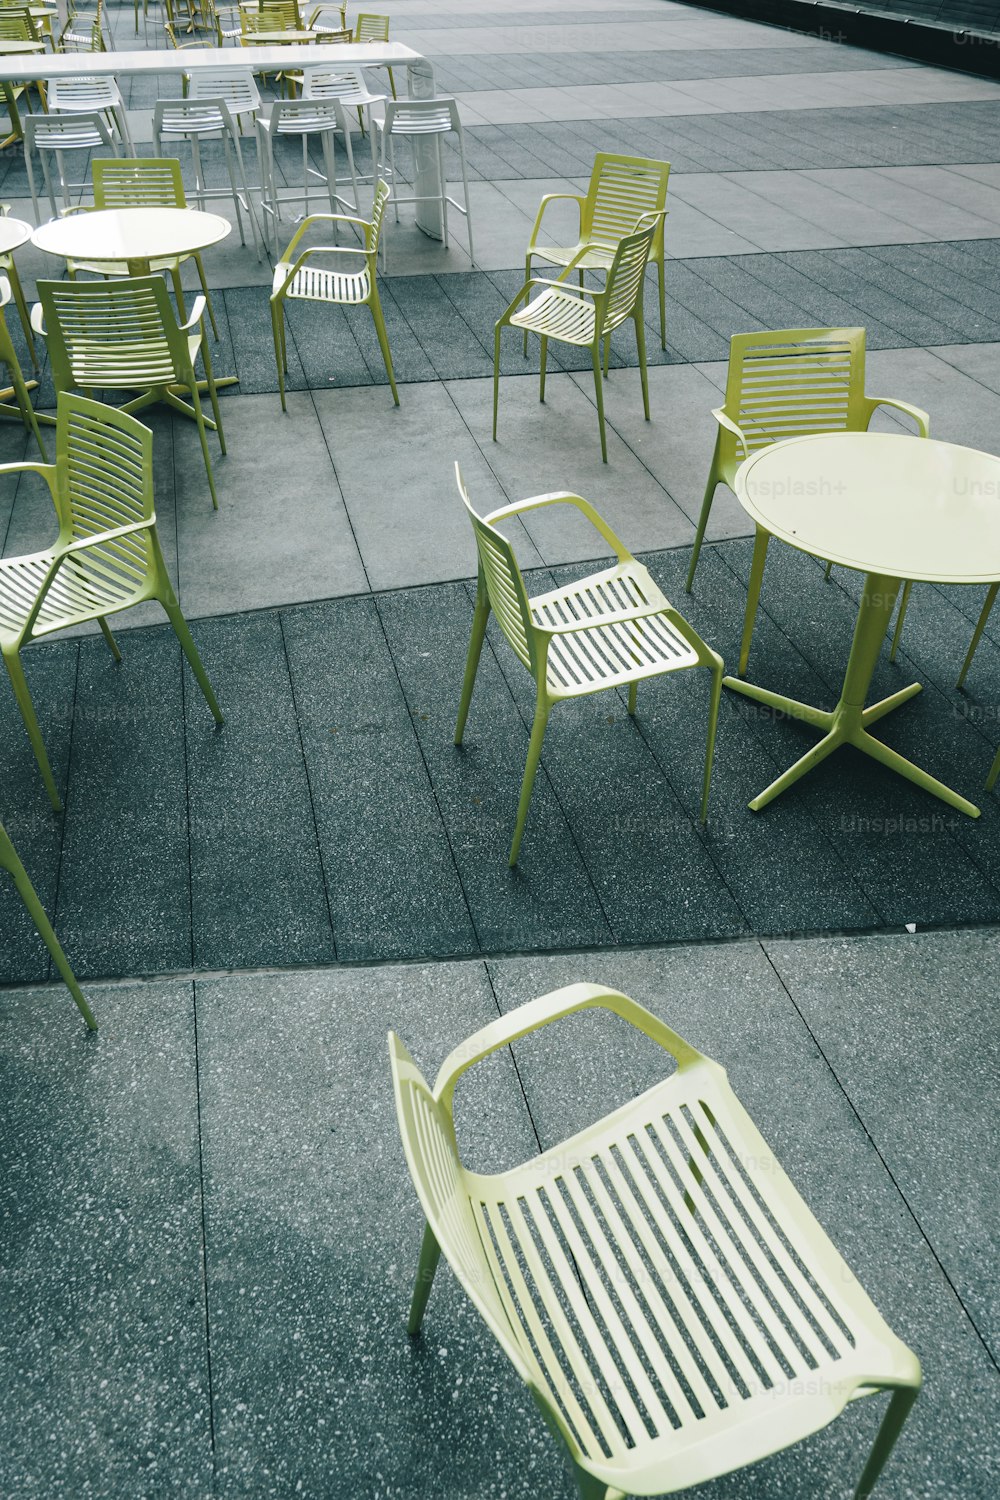 un certain nombre de chaises et de tables sur un trottoir